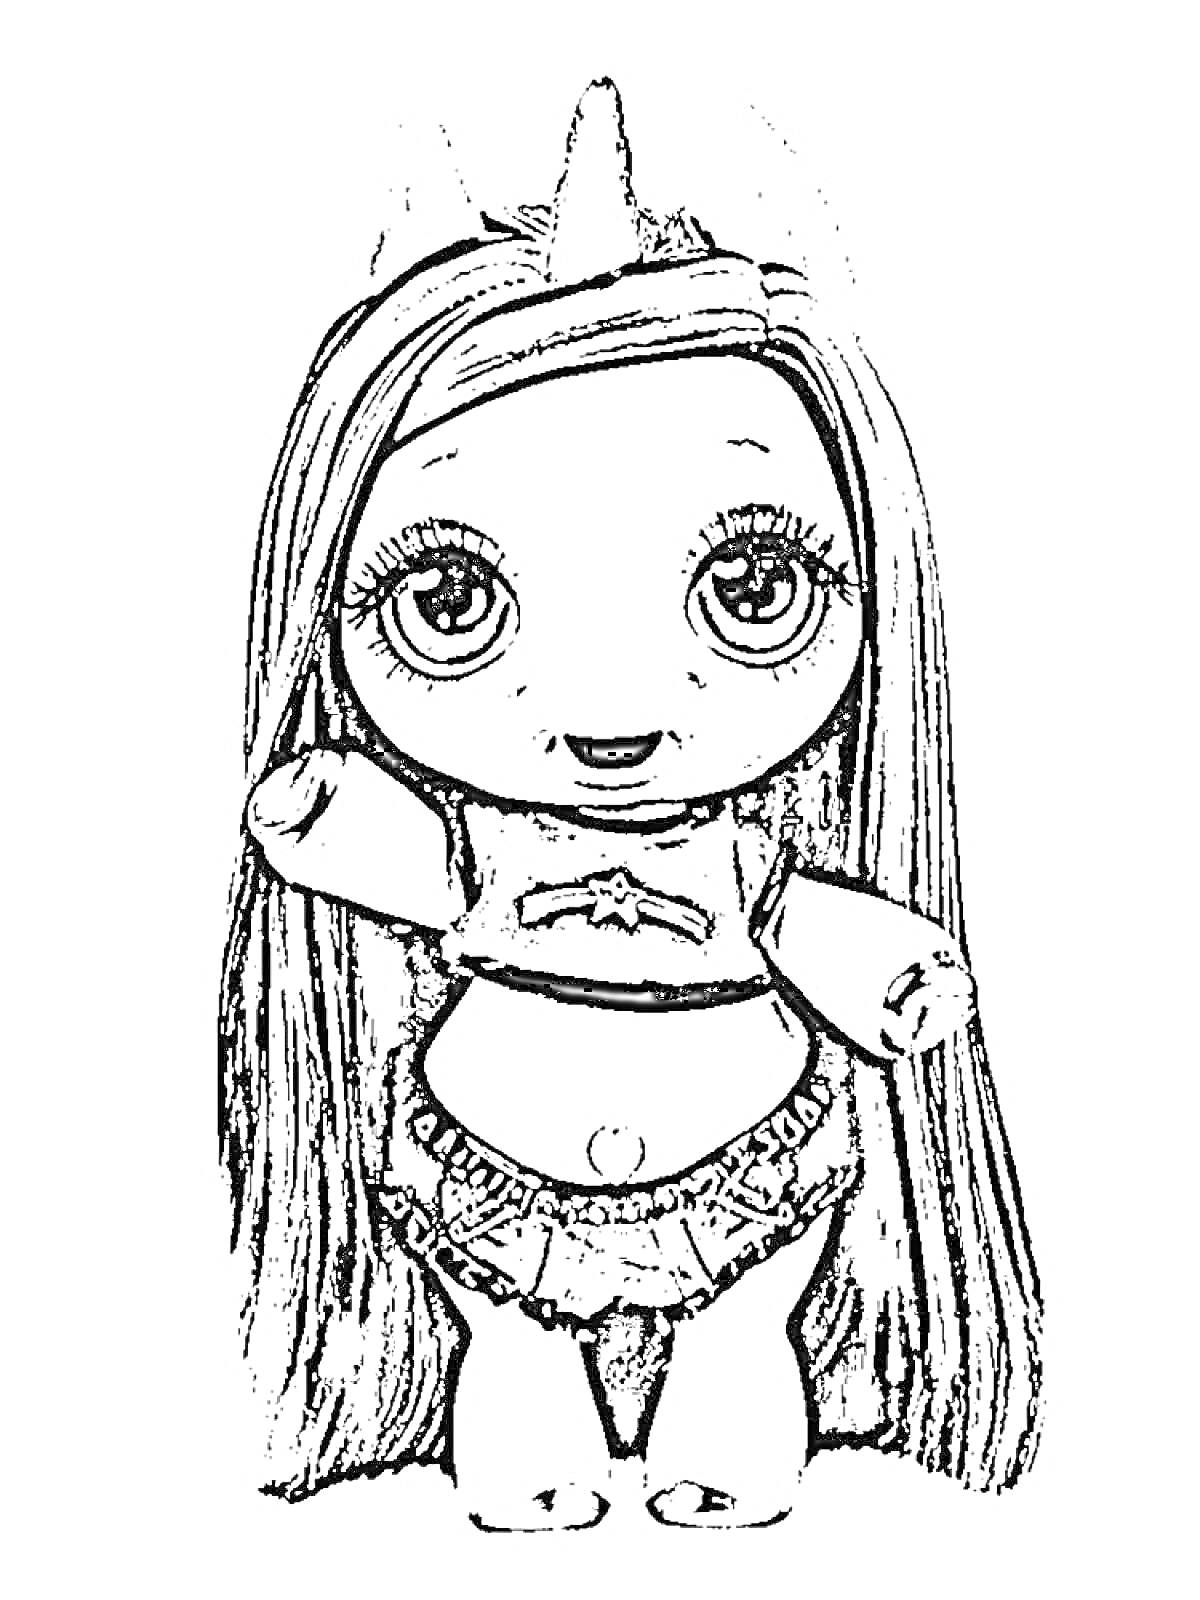 Раскраска Кукла Пупси Слайм в юбке и кофточке с длинными волосами и рогом единорога